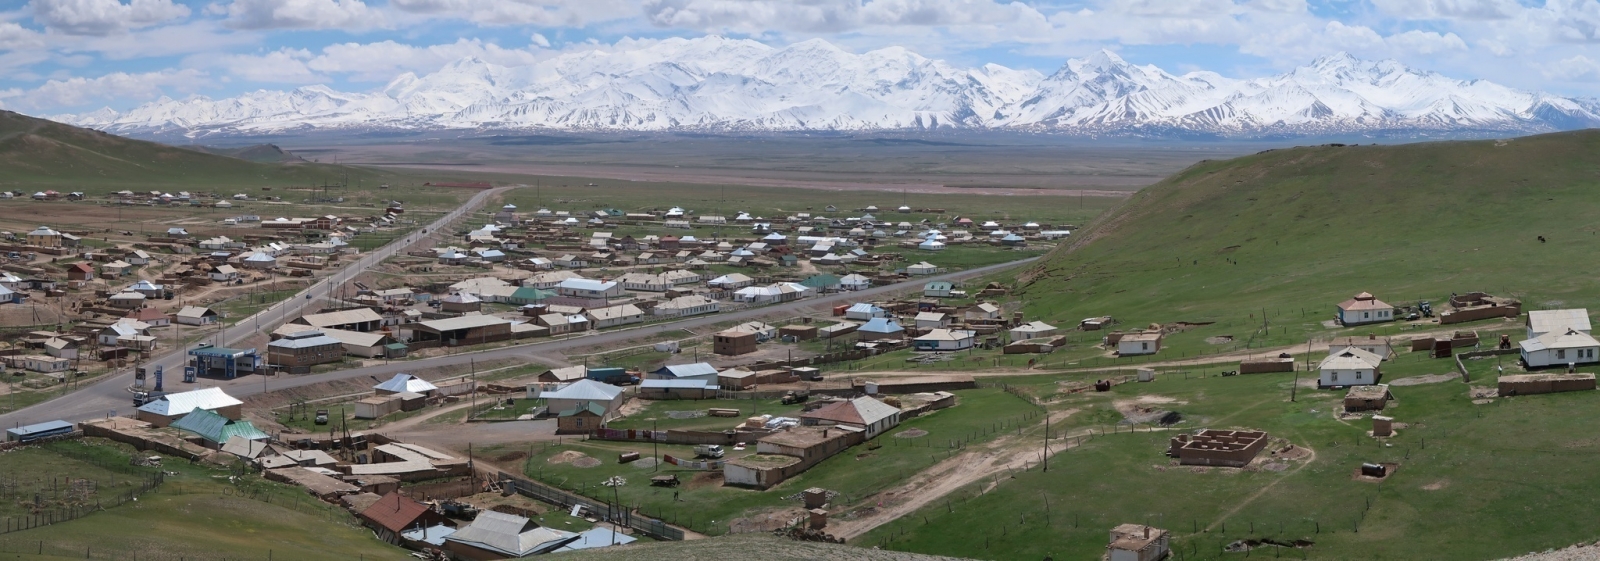 Kyrgyzstán - země pastevců, jurt a velehor